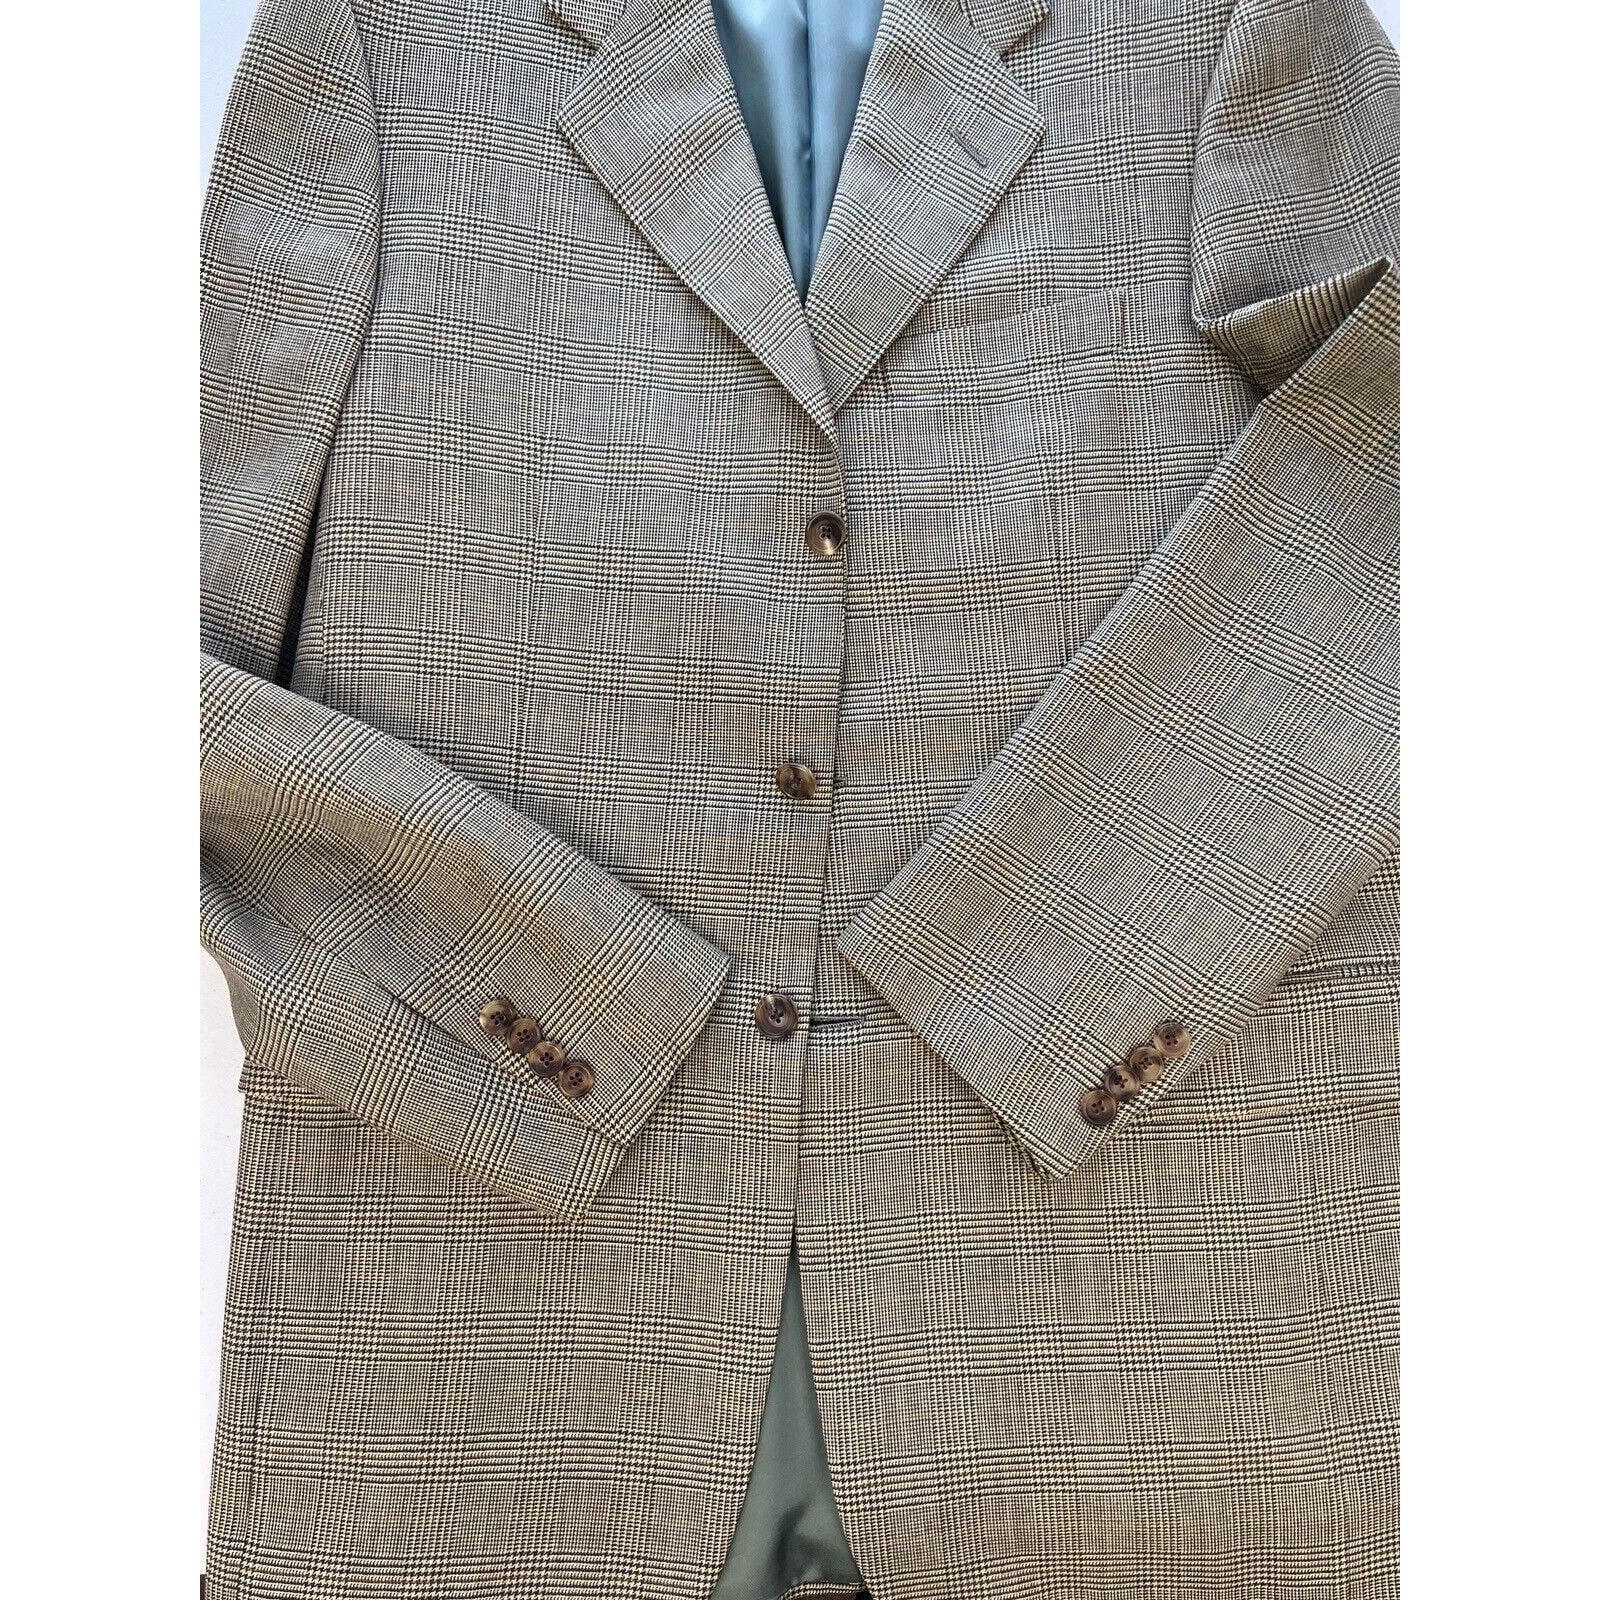 Hickey Freeman For Bergdorf Goodman 3 Button Blazer Men’s 38L Plaid Beige Jacket